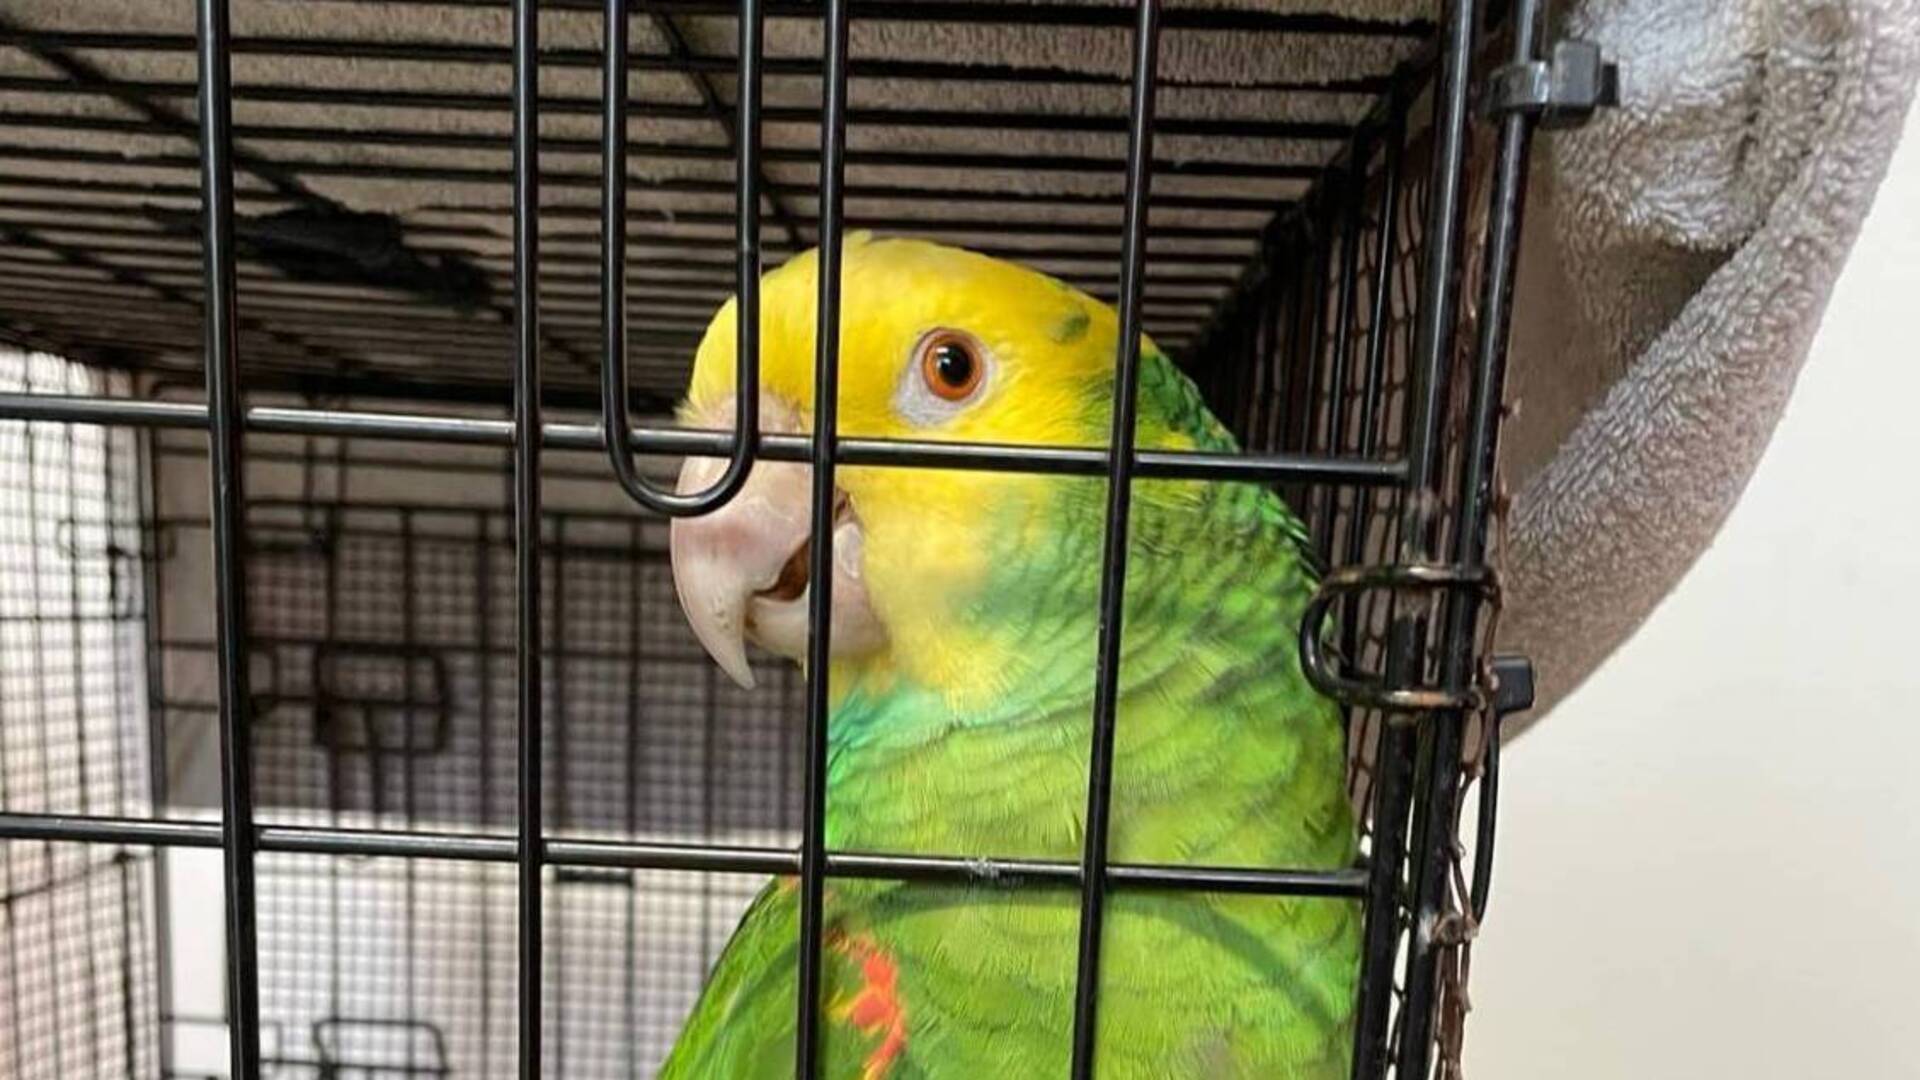 Saronno, pappagallo amazzone testa gialla recuperato in via Genova da Enpa